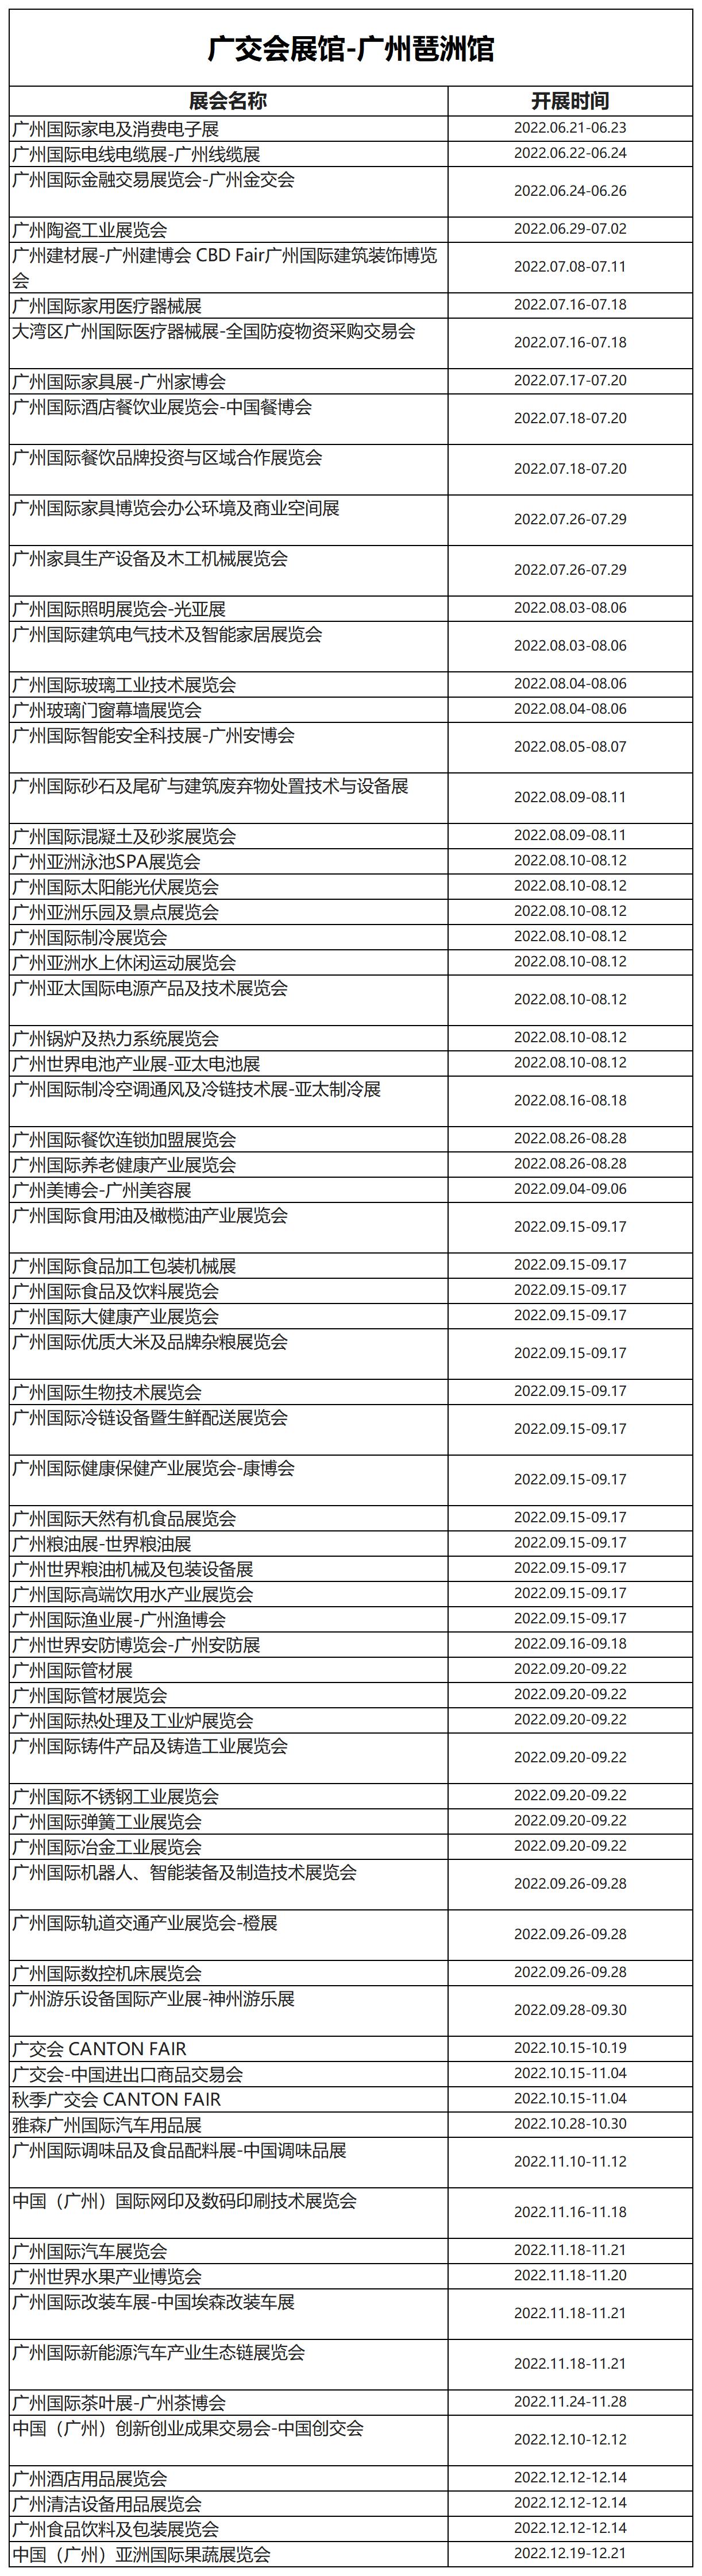 广州琶洲（广交会展馆）6-12月展会排期计划表